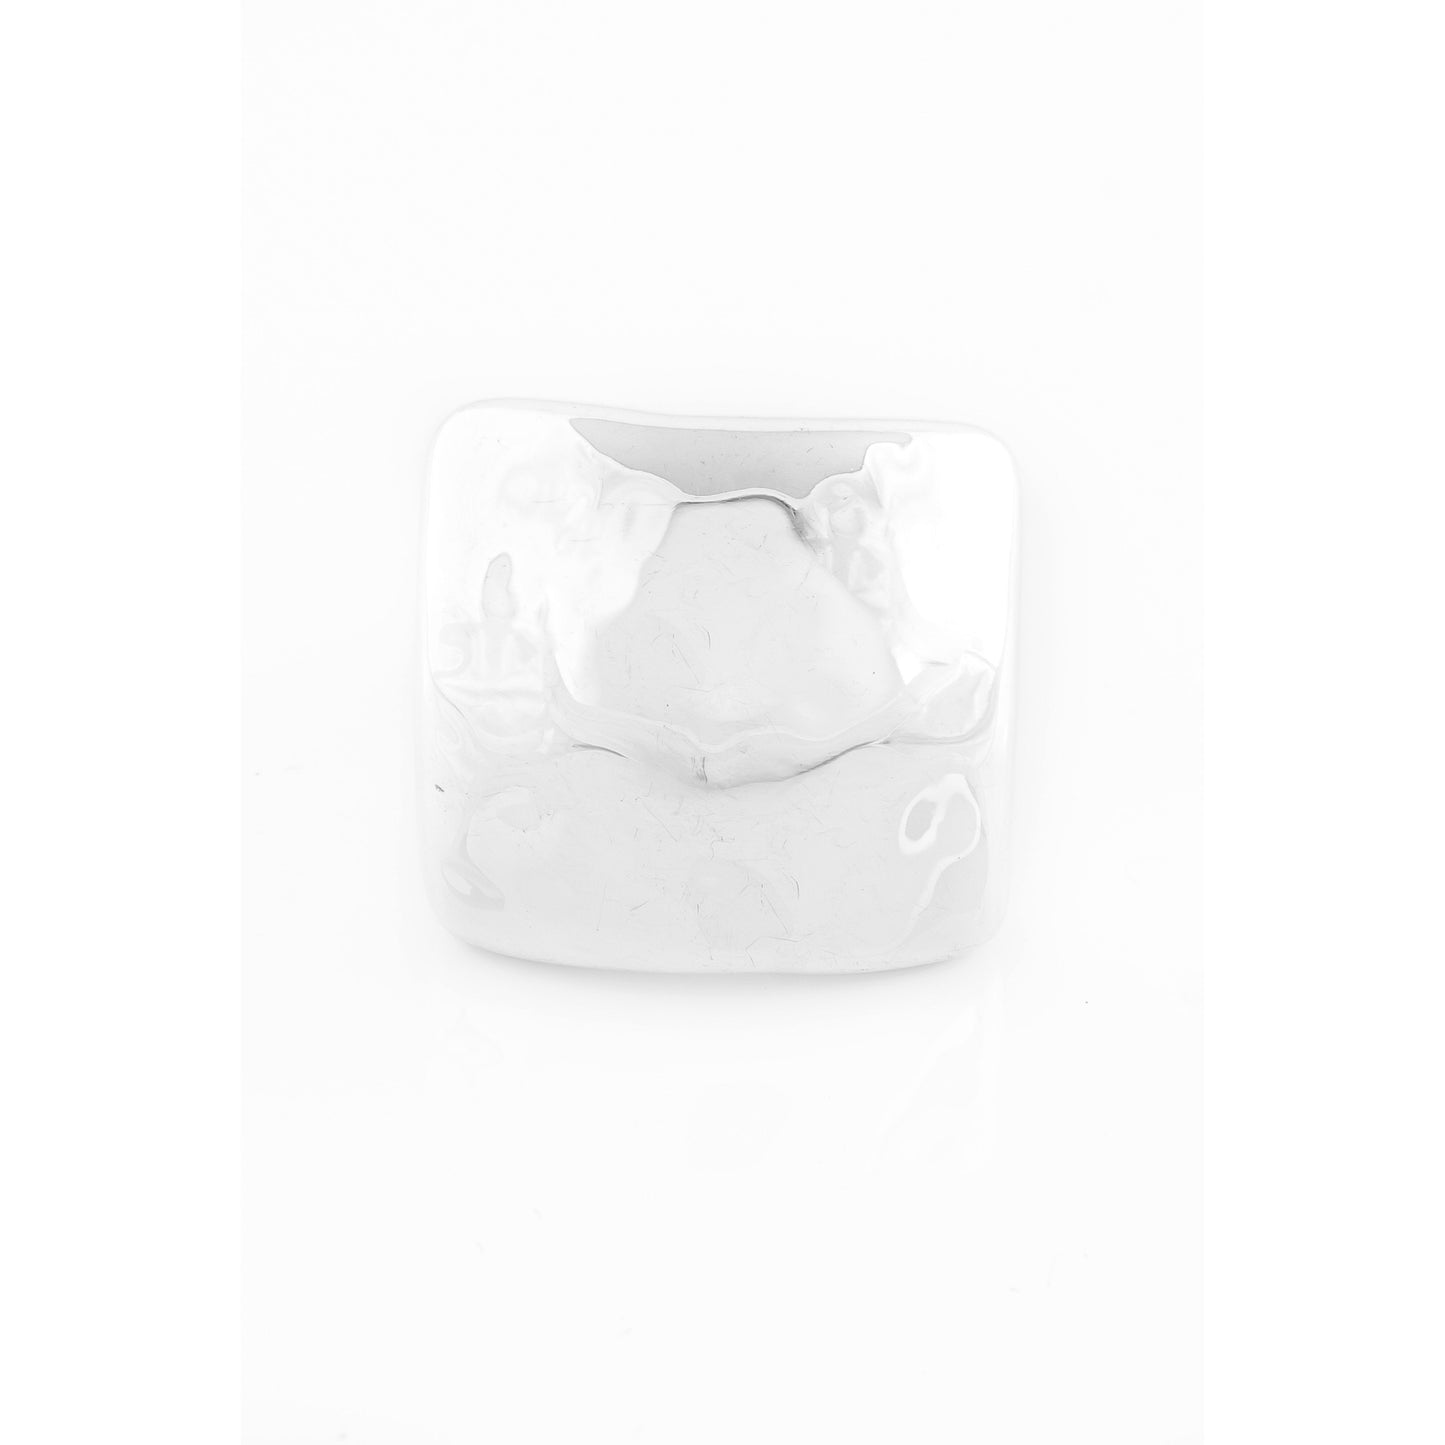 White square ceramic ashtray.